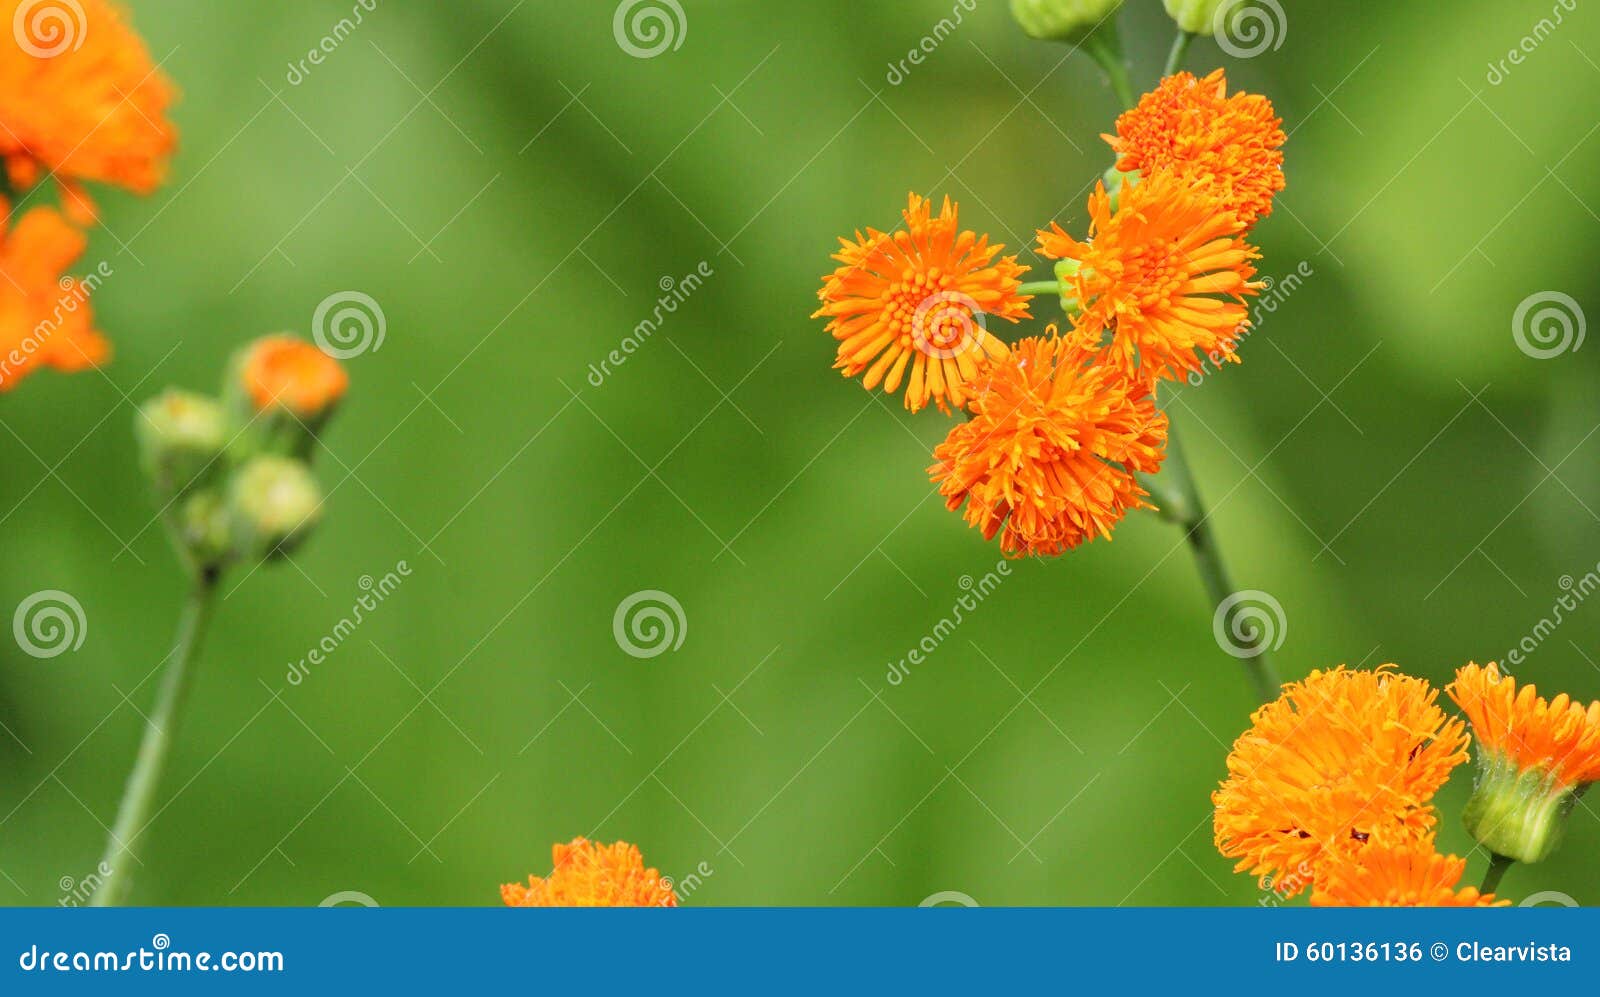 emilia javanica or irish poet. orange flowers.